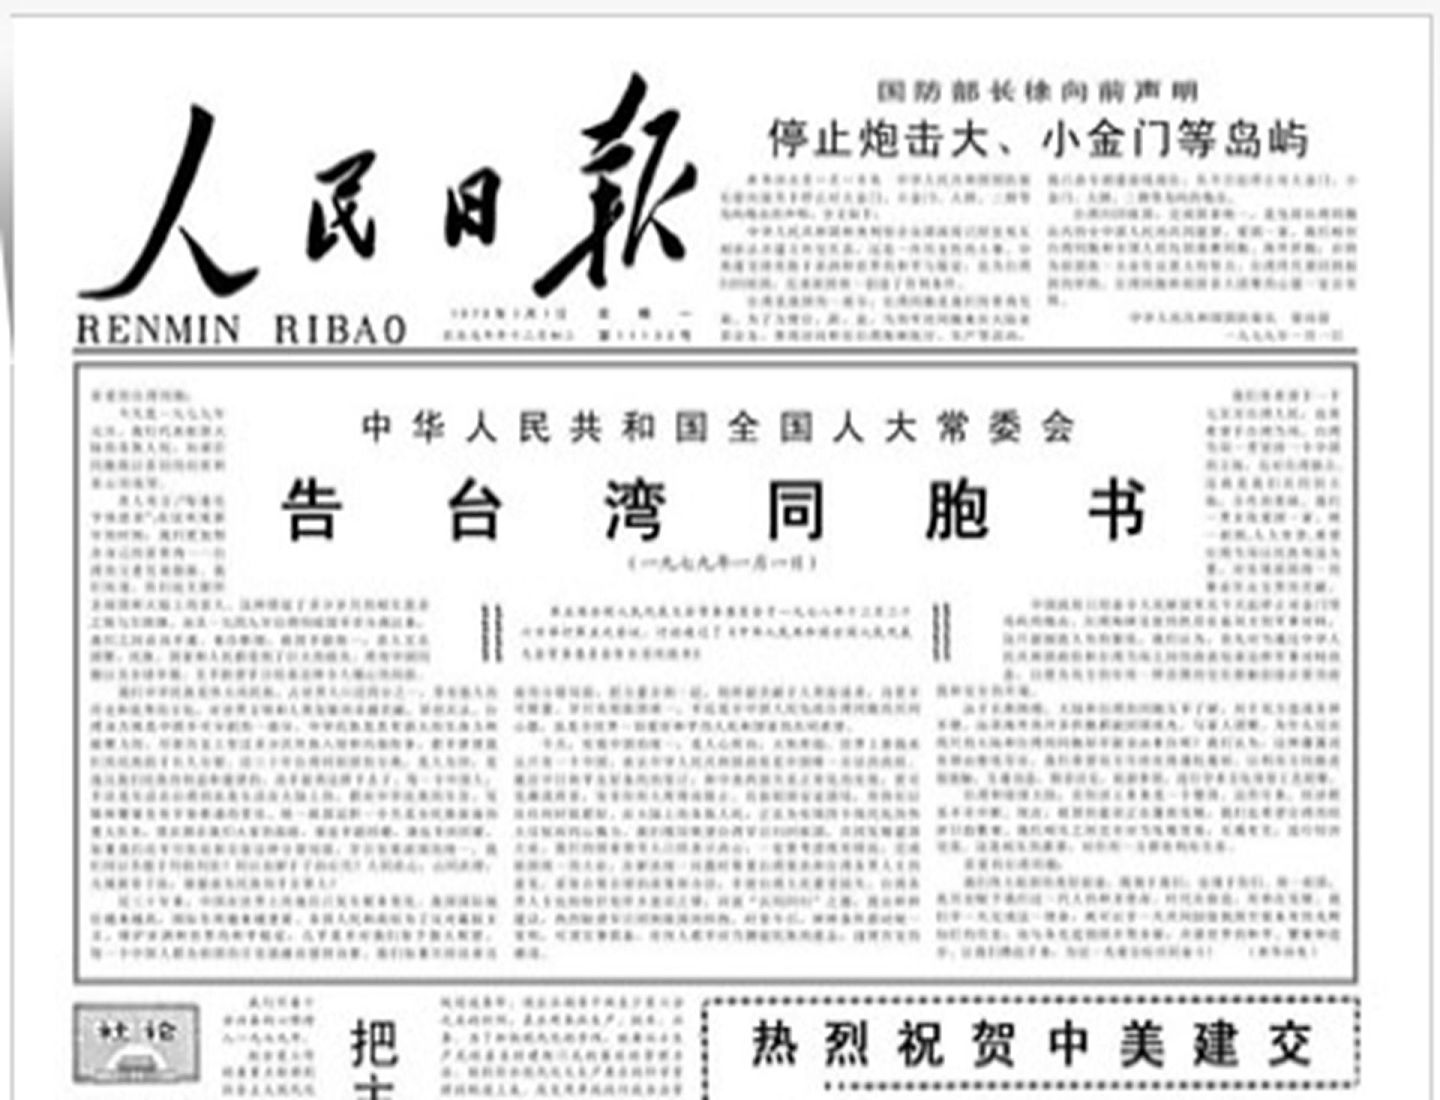 1979年1月1日，中美建交。同一天，中国全国人大常委会发表《告台湾同胞书》，国防部长徐向前声明停止炮击大、小金门等岛屿。（人民日报网站）